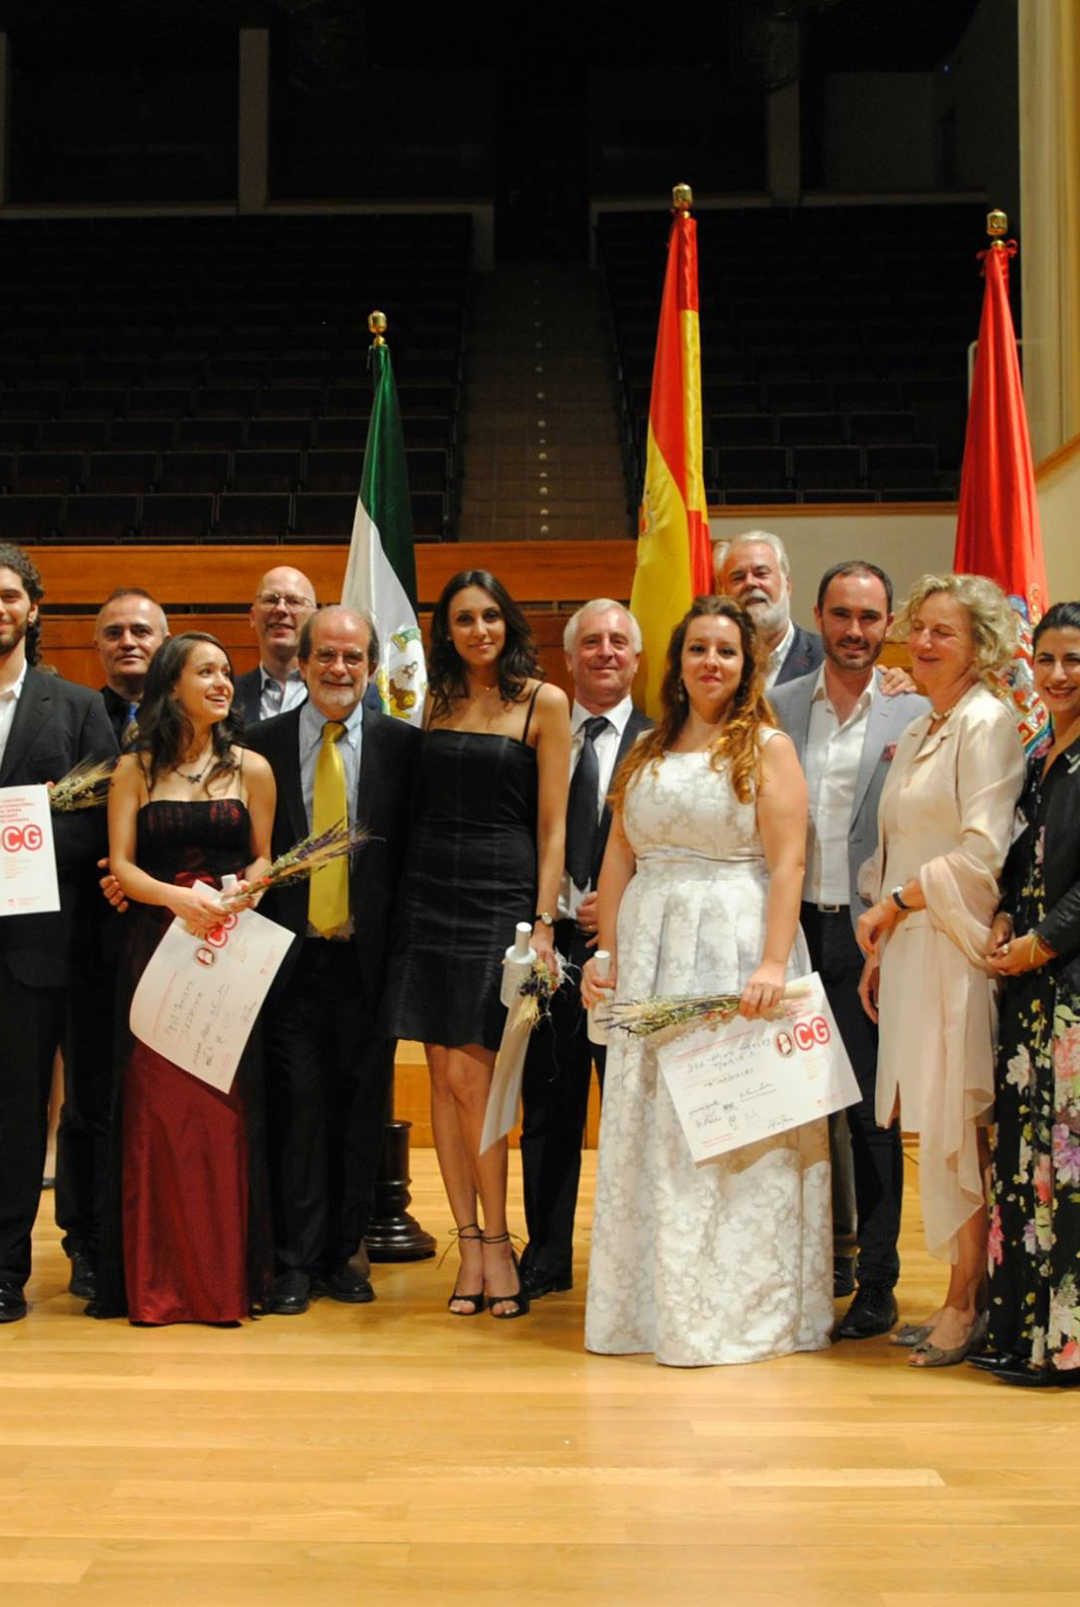 Berna Perles gana el Concurso de Ópera de Granada